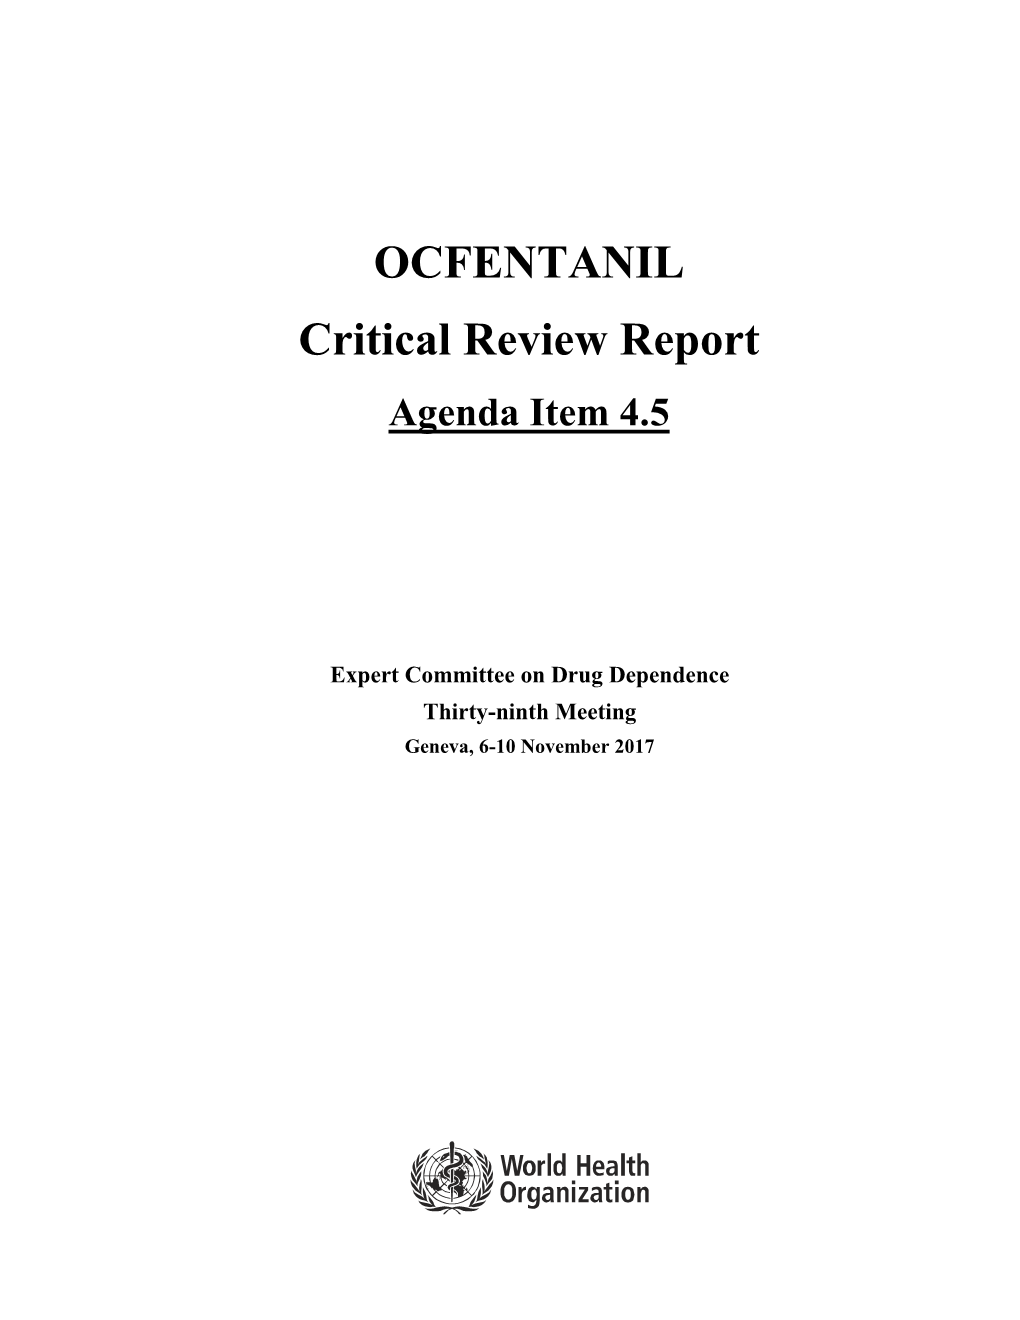 OCFENTANIL Critical Review Report Agenda Item 4.5